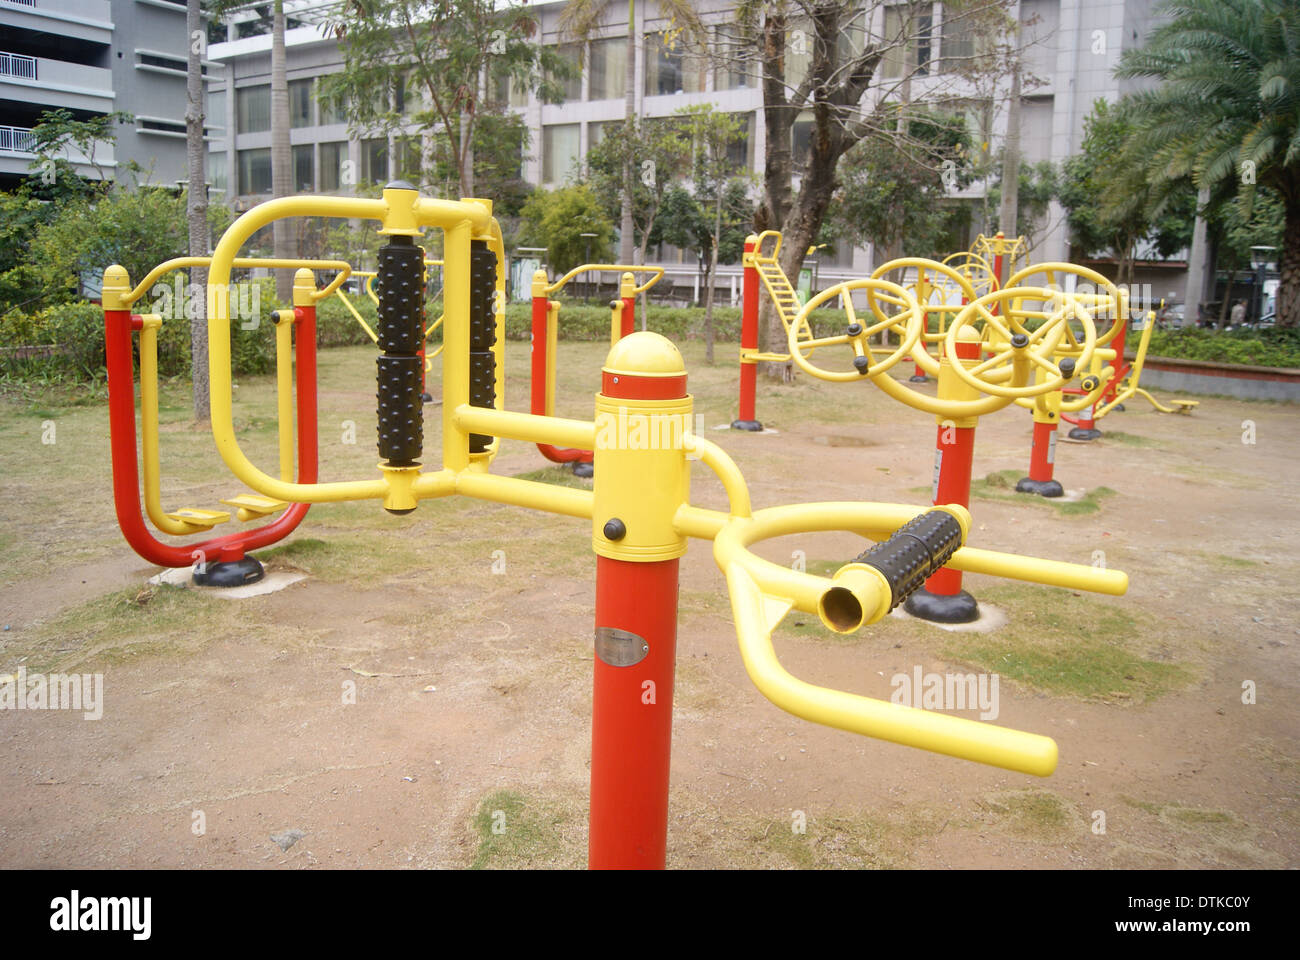 Equipo de gimnasio e instalaciones deportivas, en la zona residencial de China Foto de stock